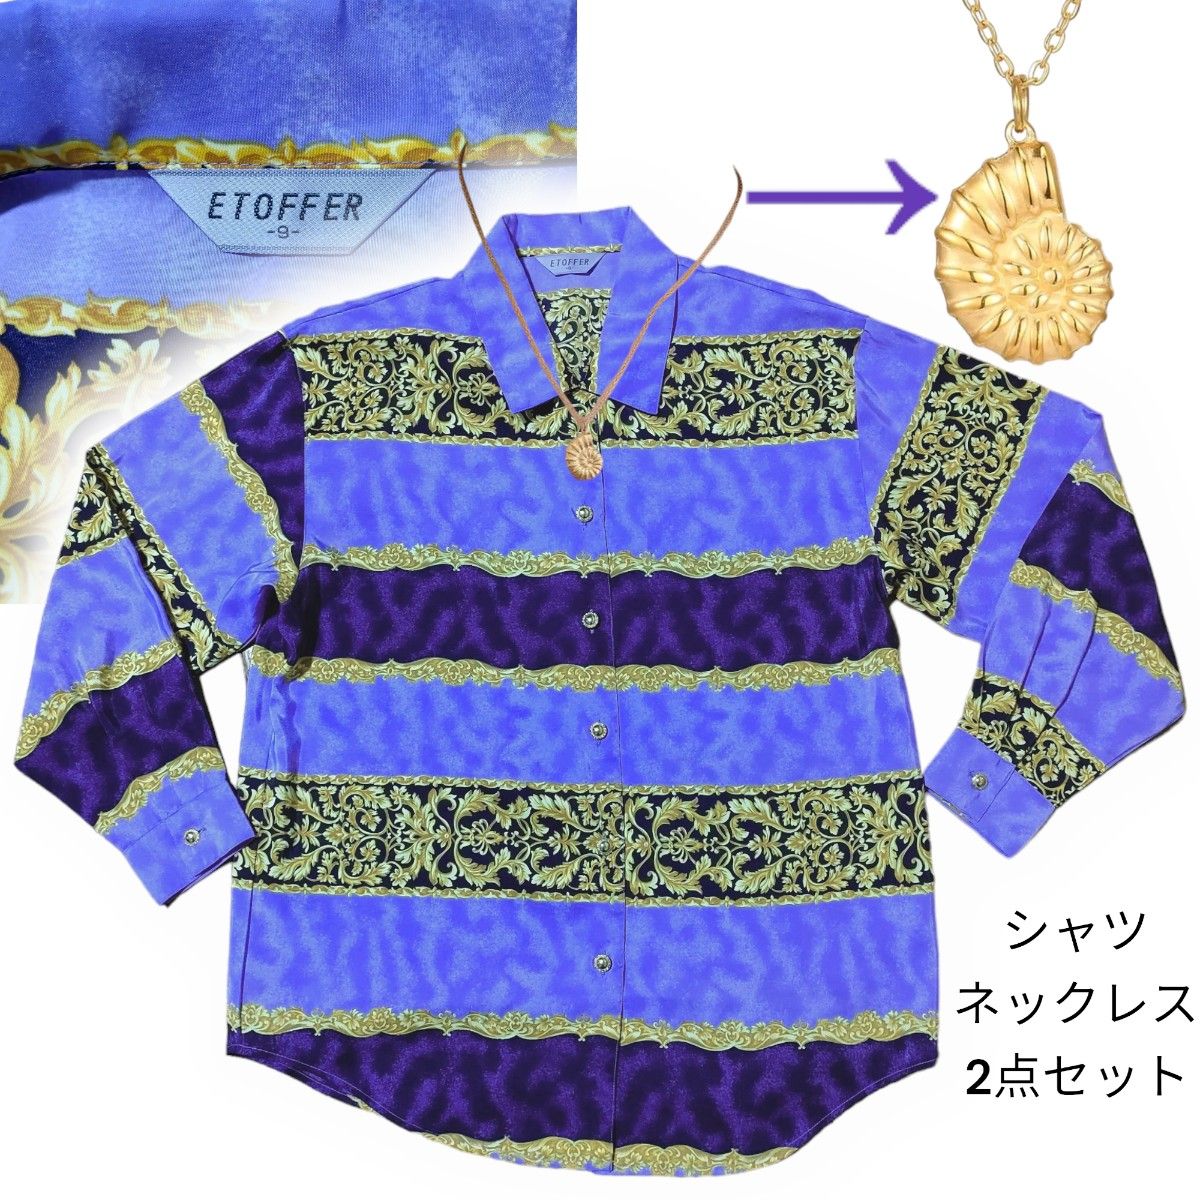 柄シャツ+巻き貝のネックレス2点セットバウンドコーデ9号ETOFFER紫パープル